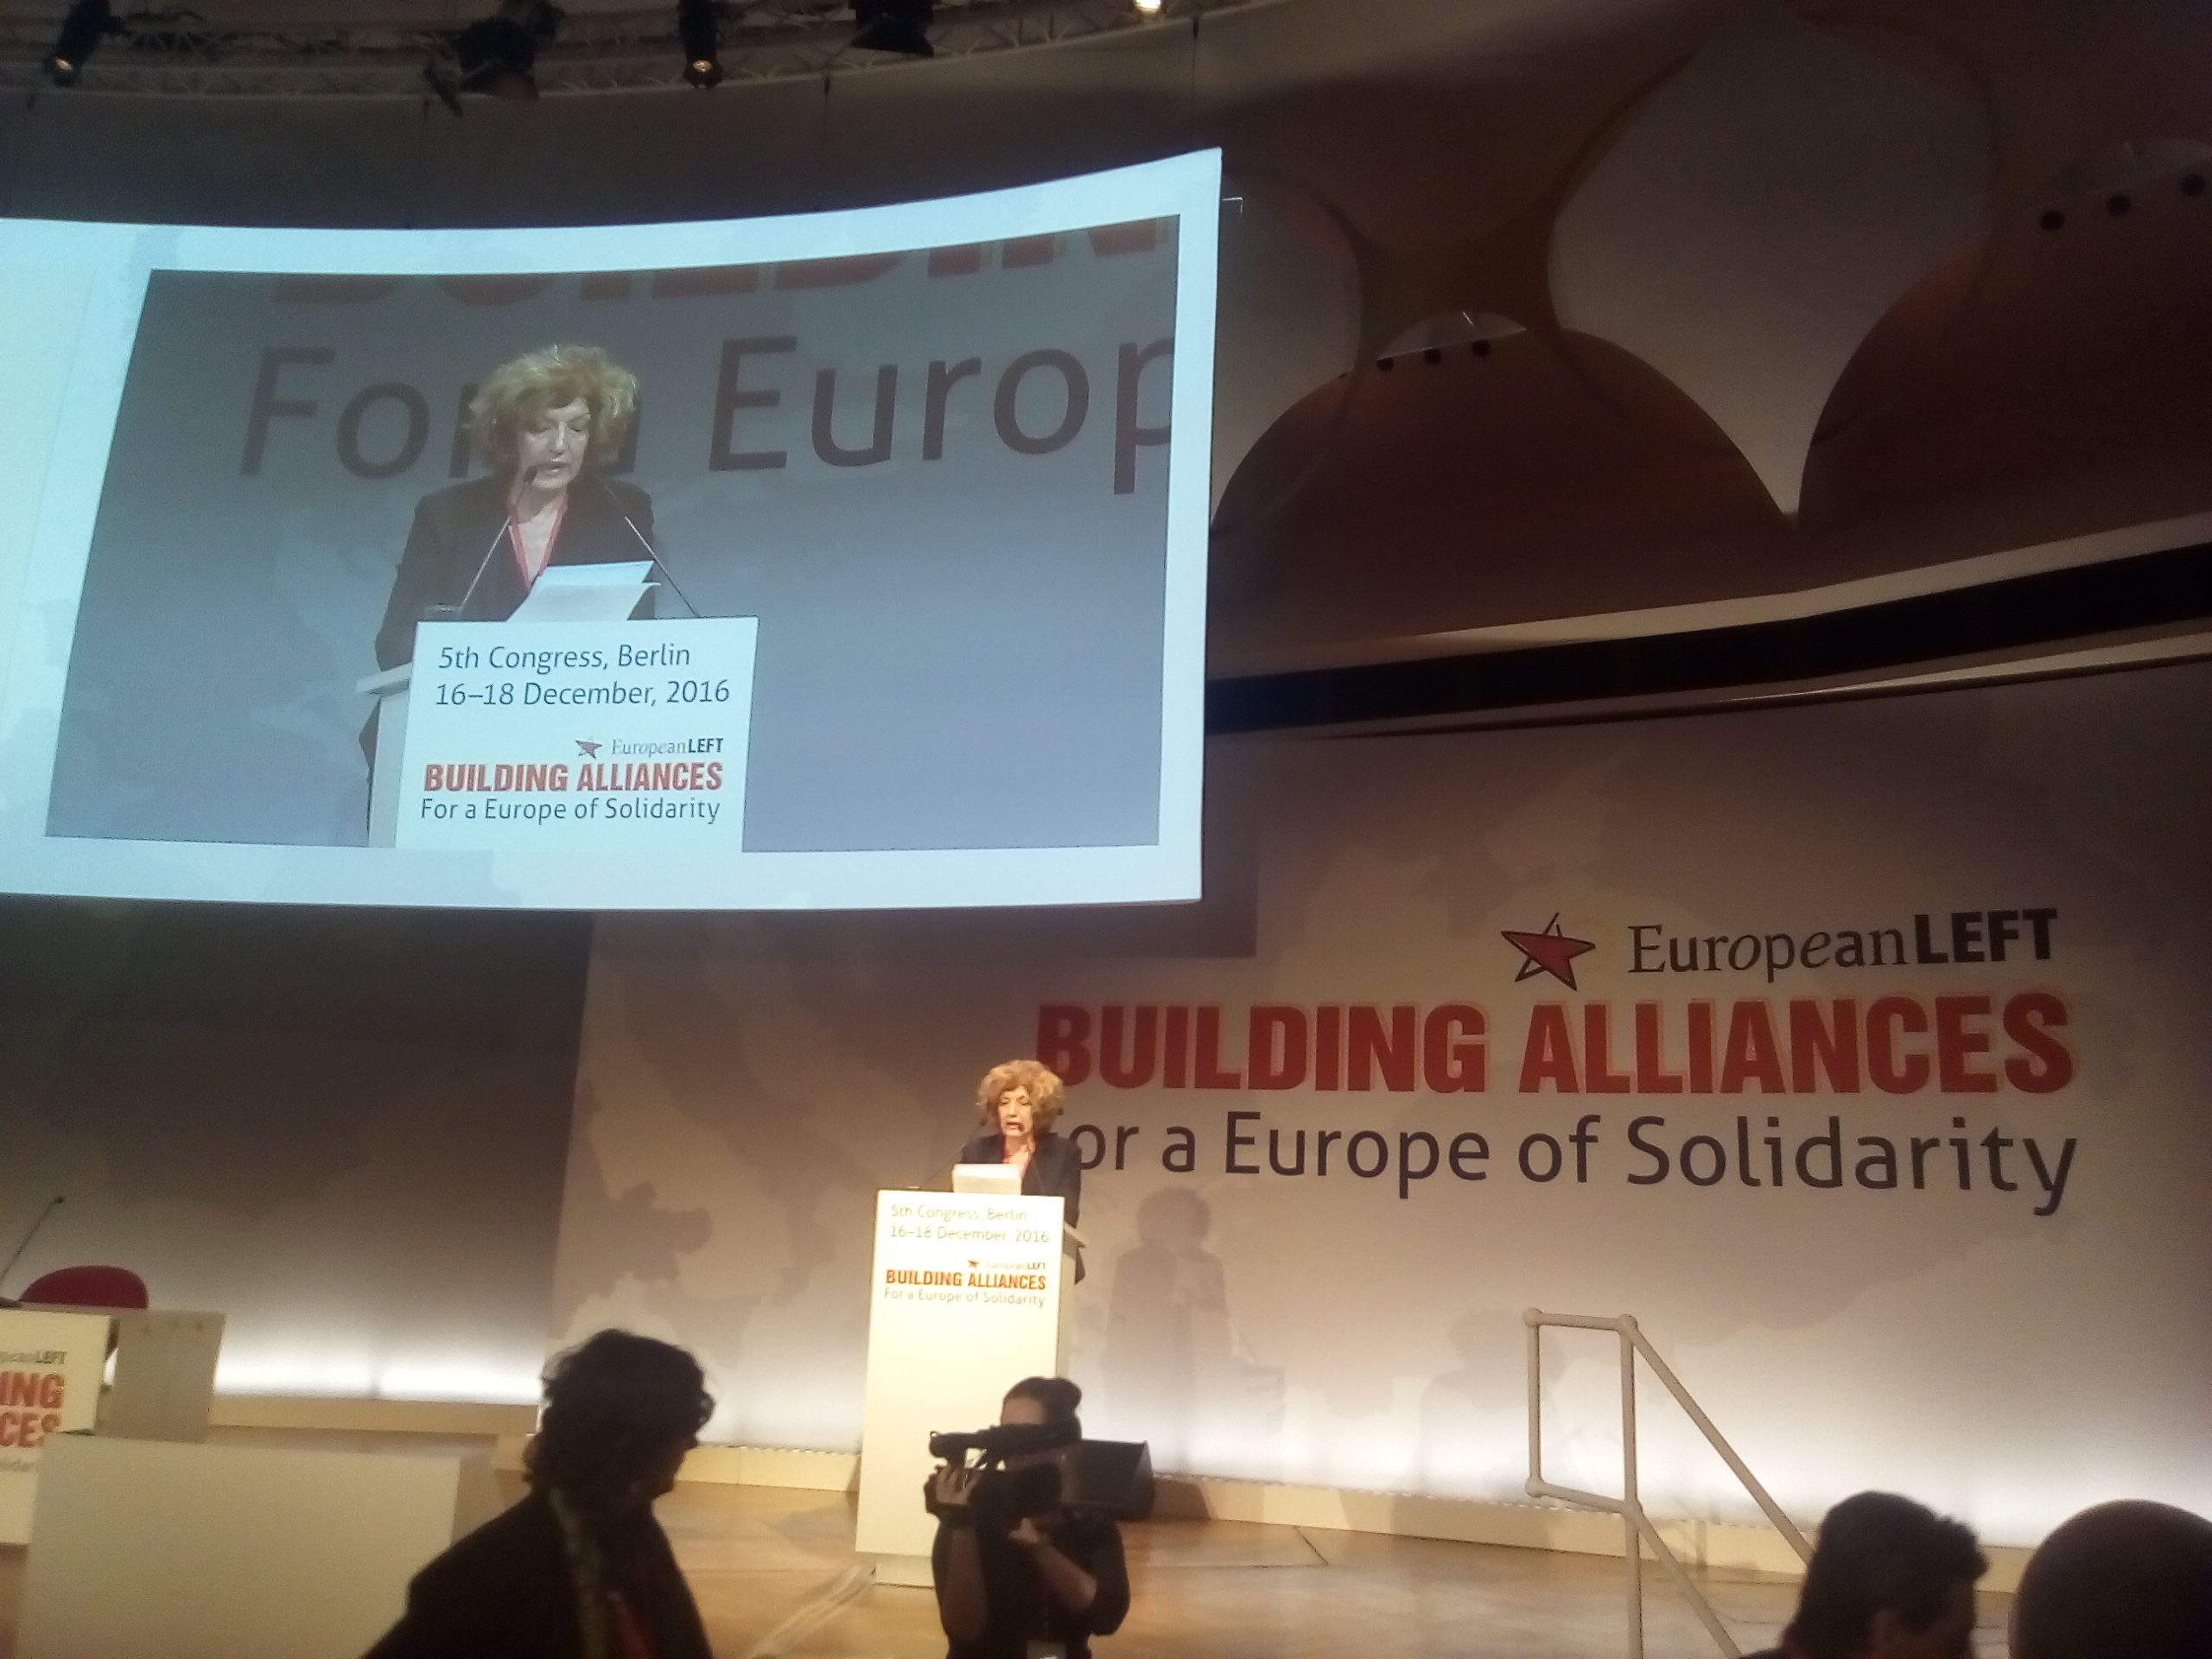 Ομιλία της Σίας Αναγνωστοπούλου στο 5ο Συνέδριο του κόμματος της Ευρωπαϊκής Αριστεράς στο Βερολίνο